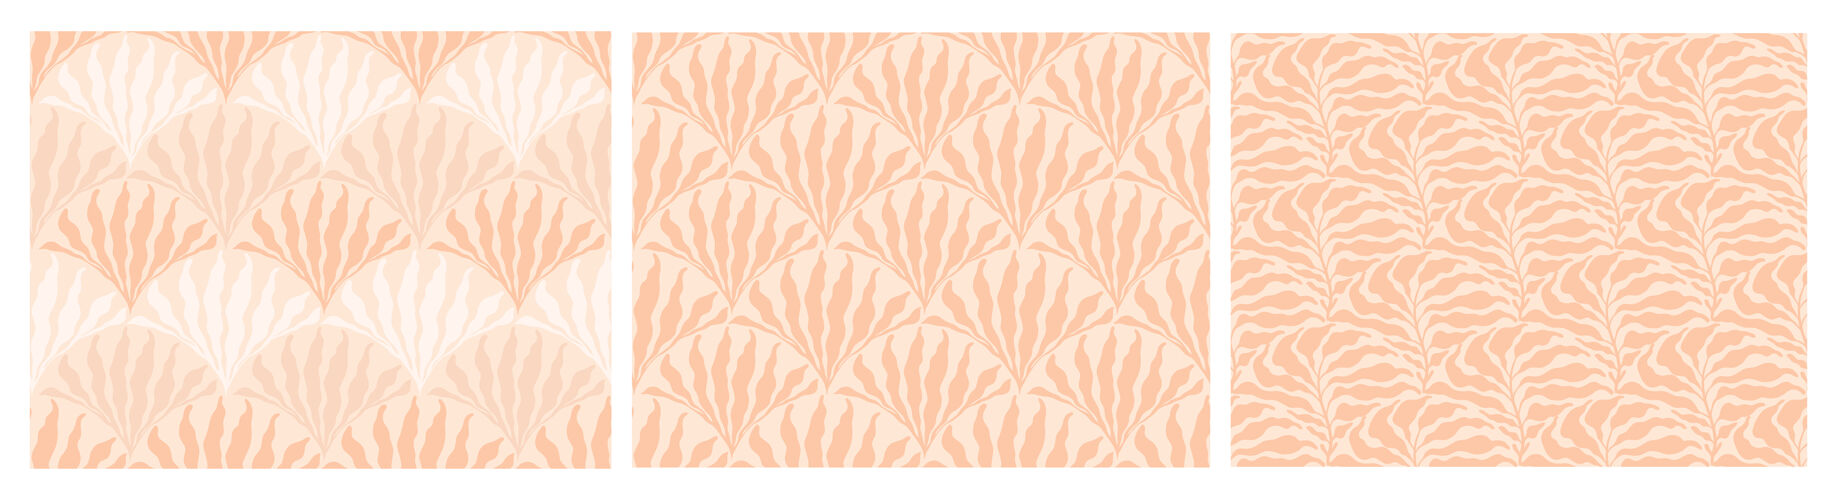 棕榈一套抽象简约的波西米亚风格的无缝图案与手工绘制的点和叶橙色无缝图案抽象